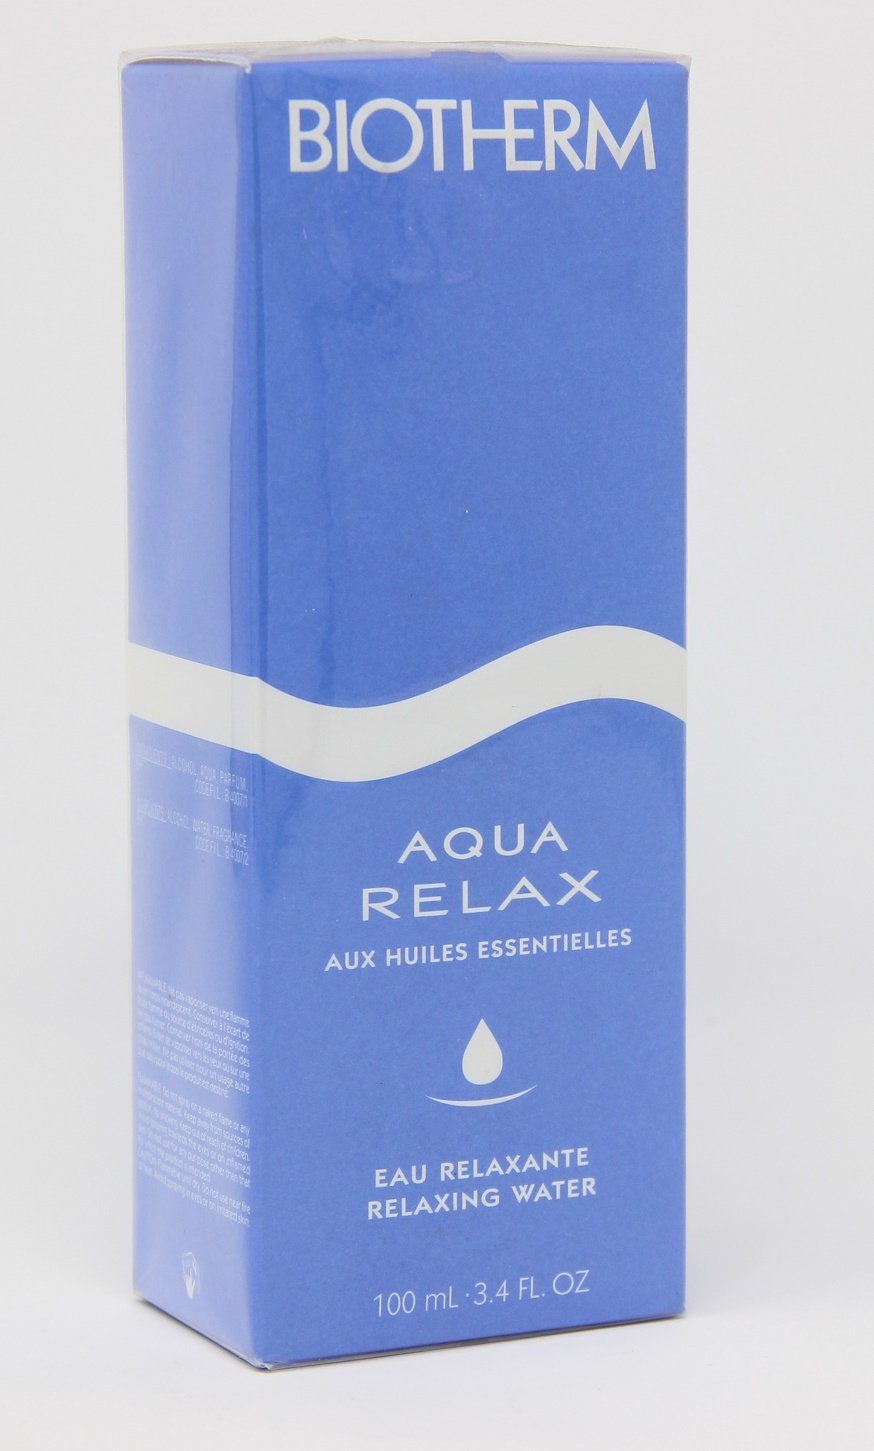 BIOTHERM Selbstbräunungstücher Biotherm Aqua Relax essential oils relaxing water 100ml